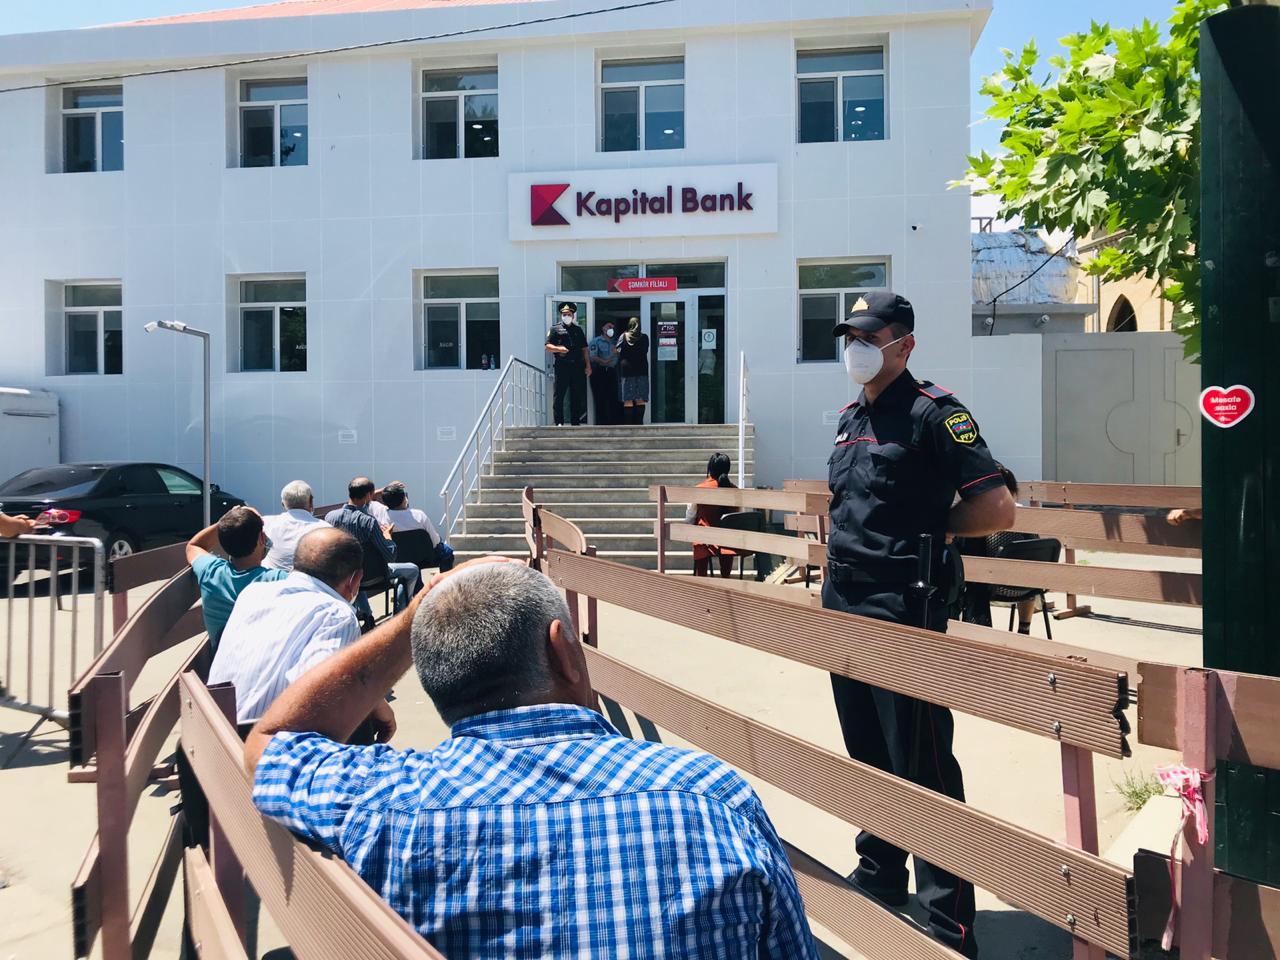 Главный директор по розничным продажам Kapital Bank Рамиль Имамов: «Во избежание очередей мы рекомендуем нашим клиентам использовать онлайн-банковские услуги» (R)